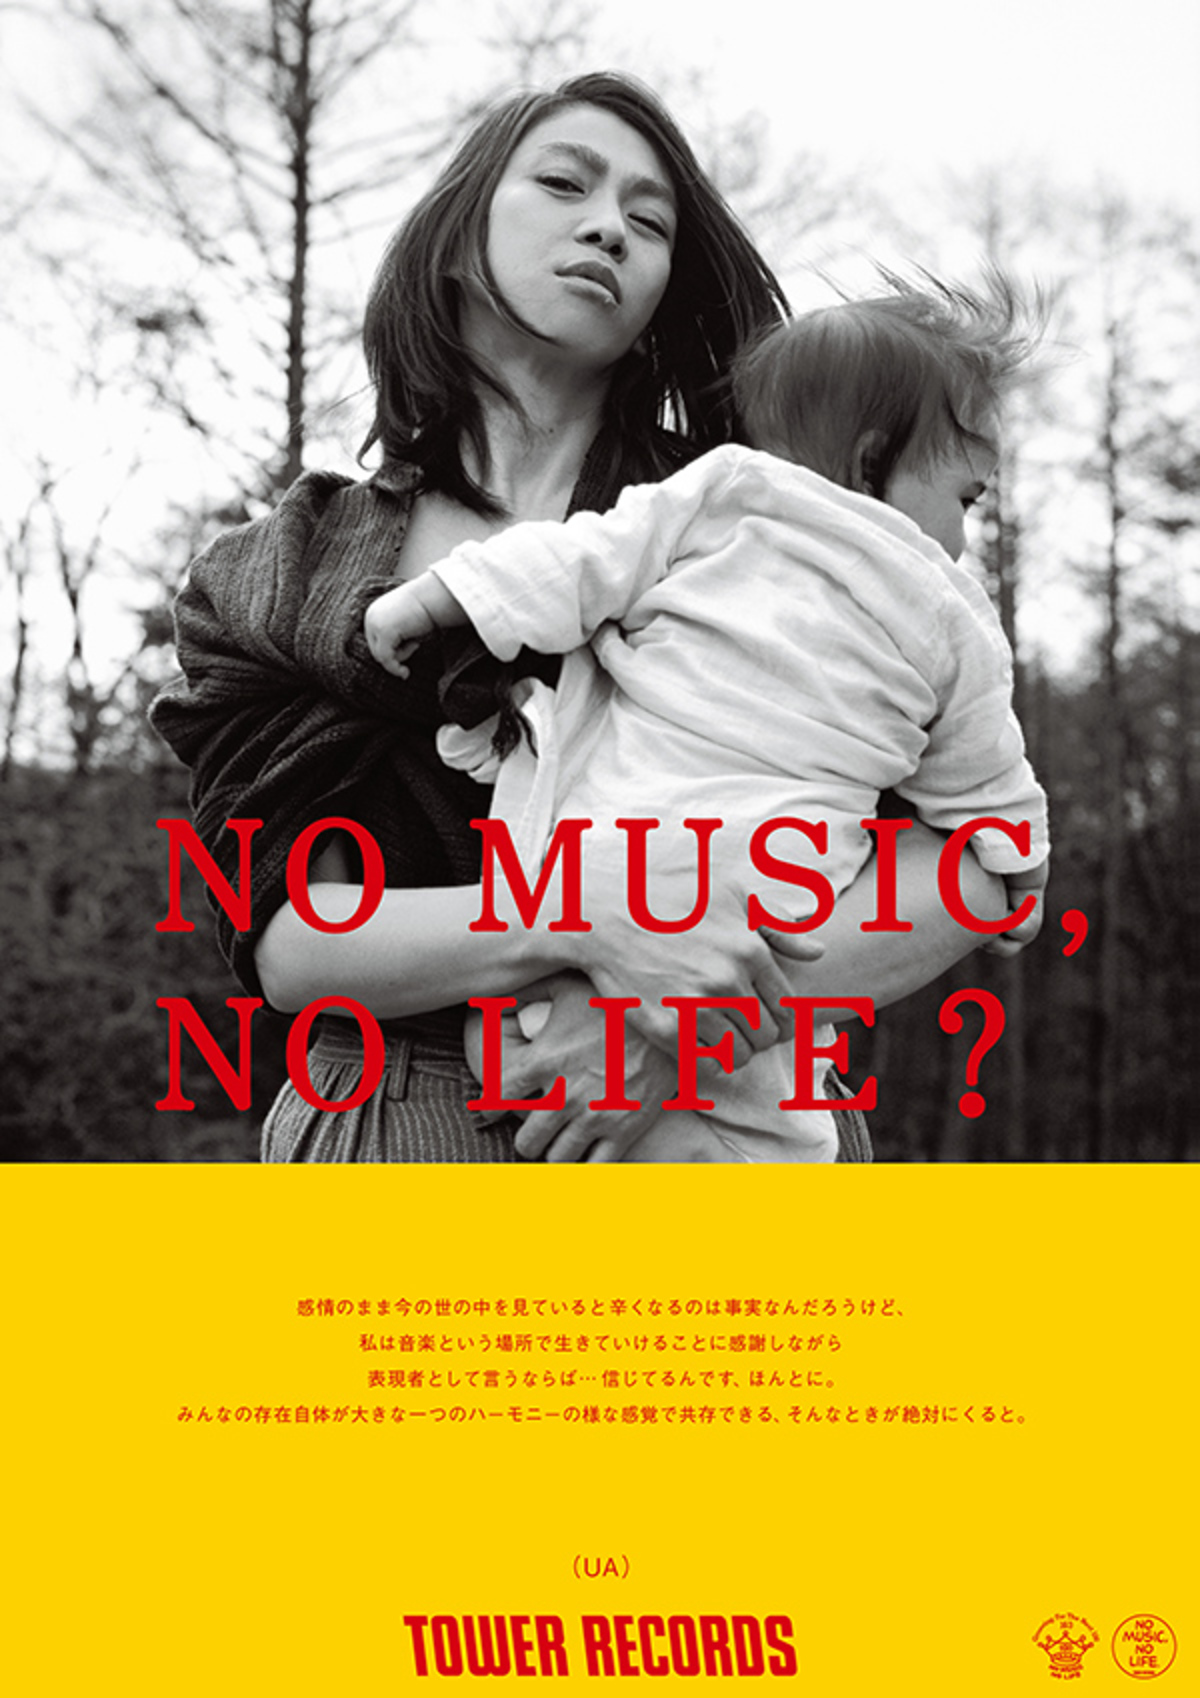 UA、タワレコ"NO MUSIC, NO LIFE?"ポスターに年ぶりに登場。タワレコ